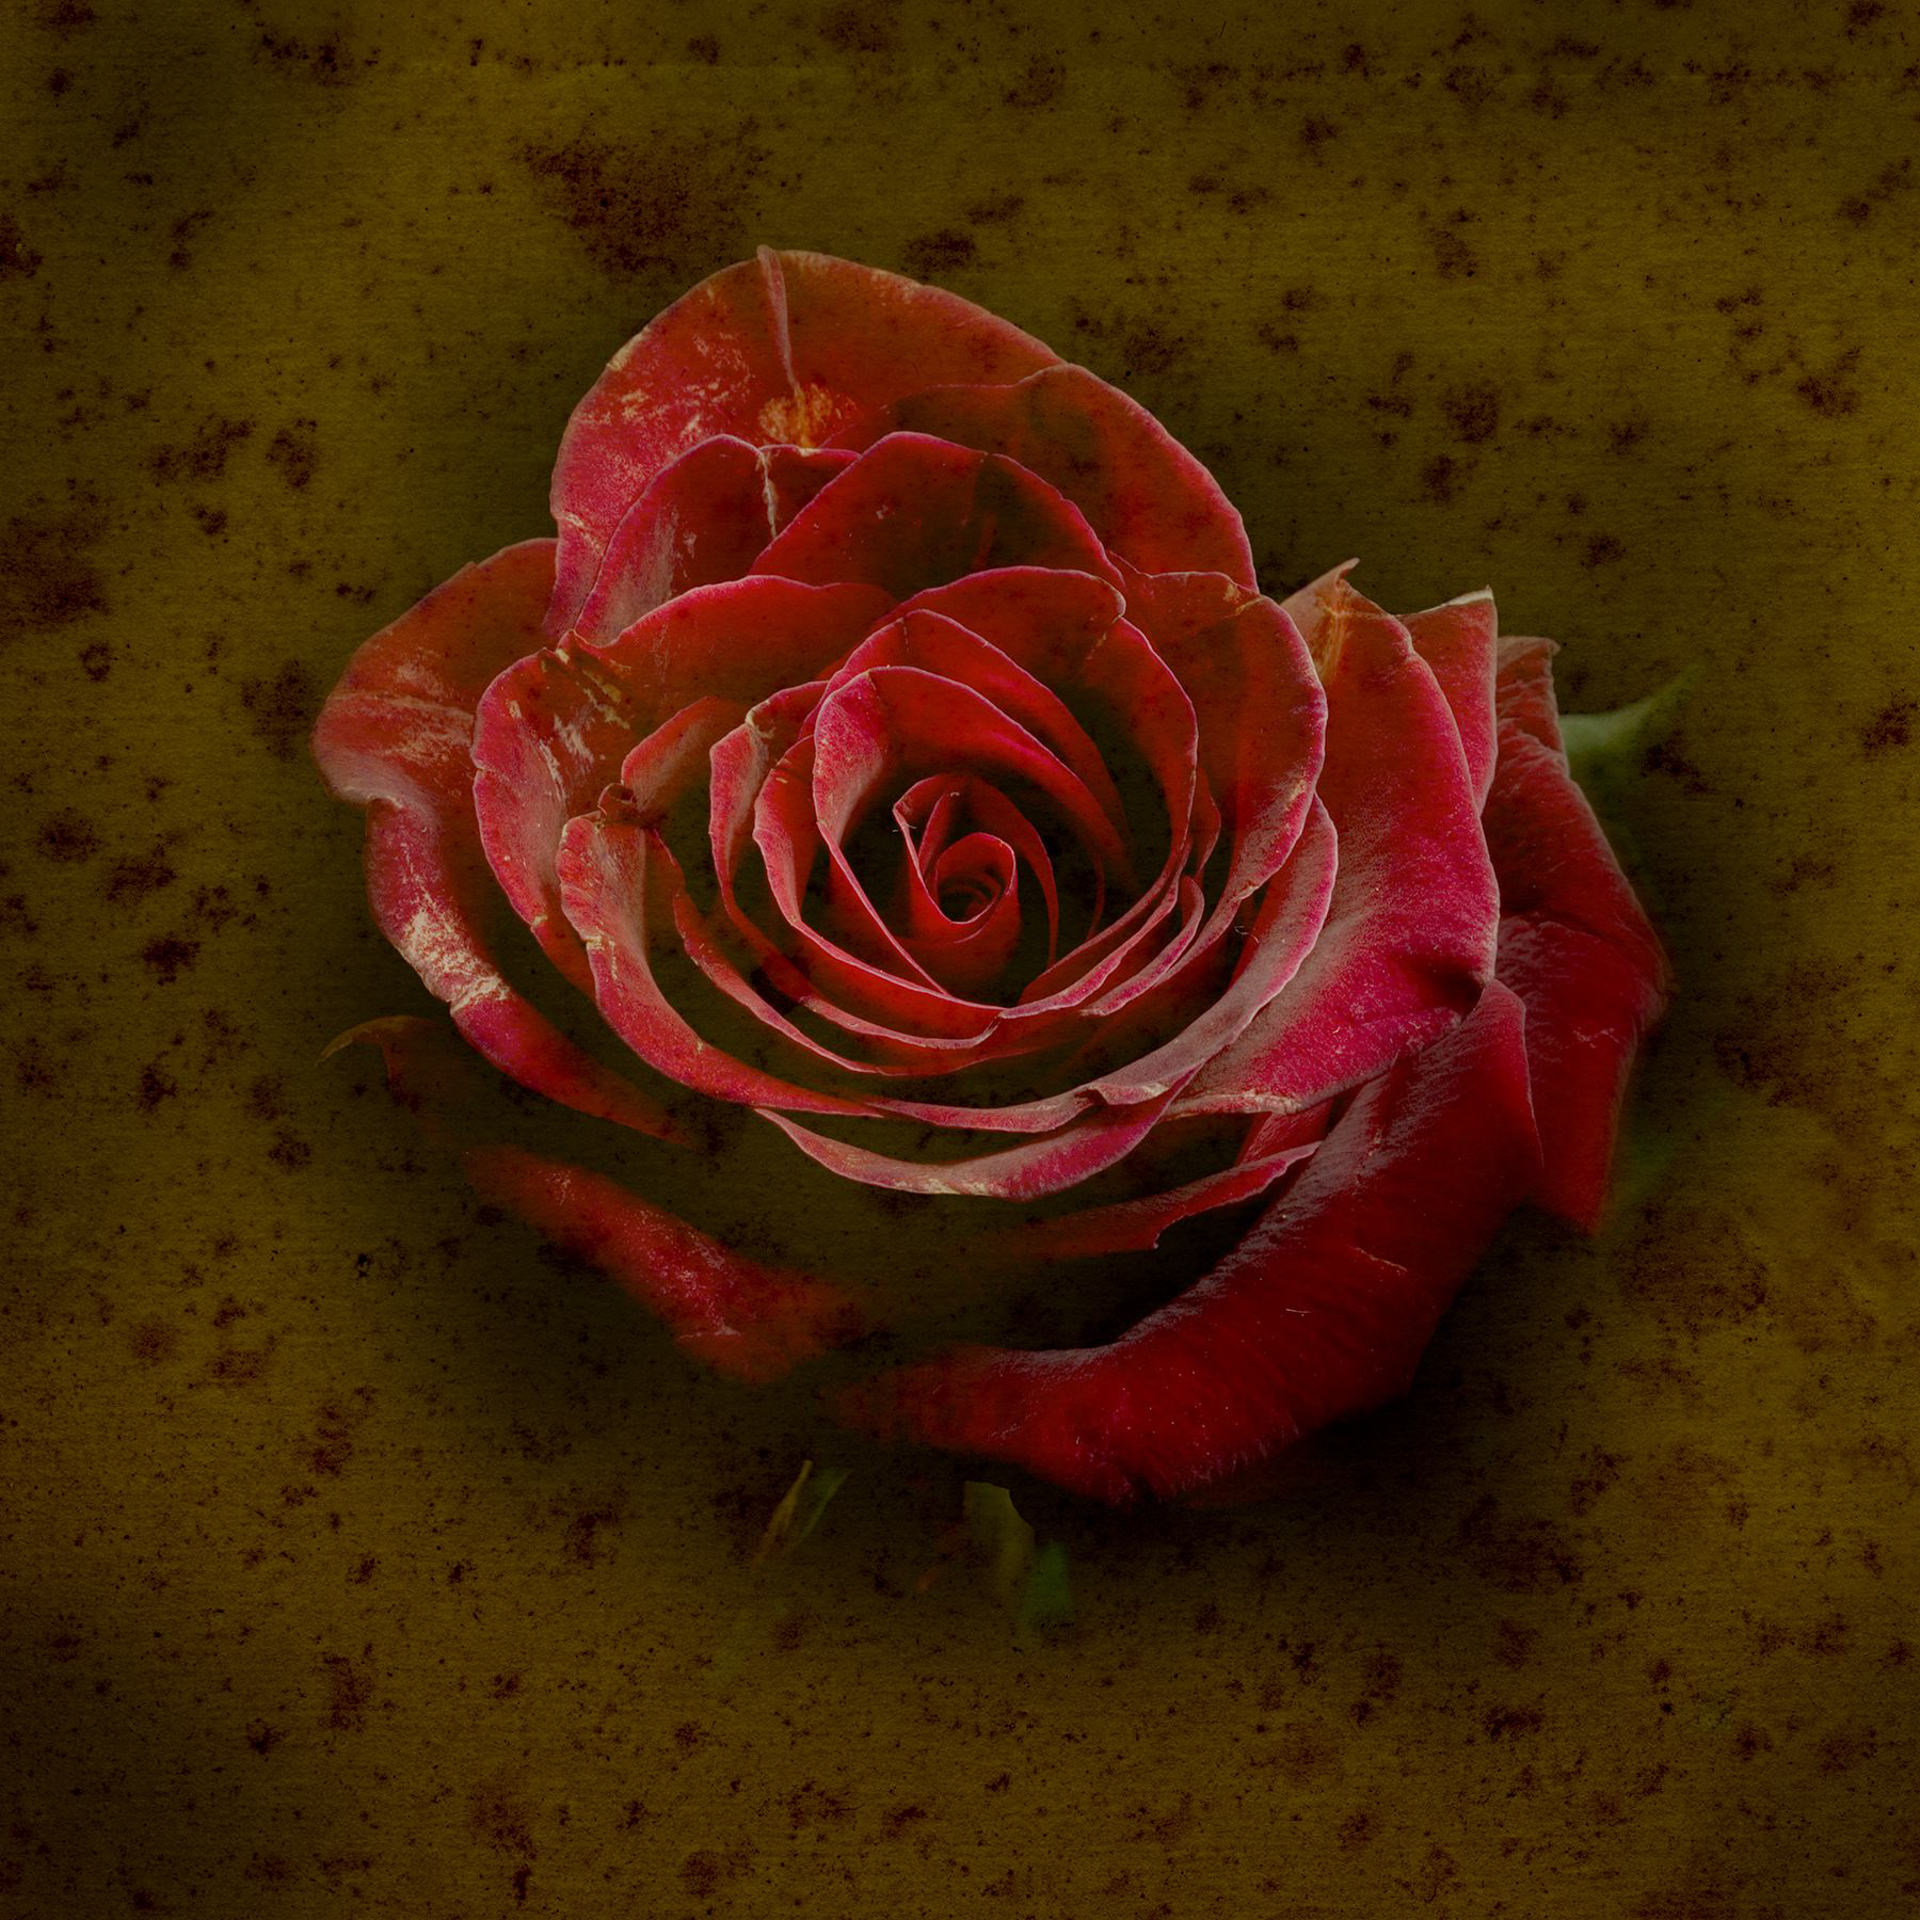 Rose #2   3/5 by Jack Spencer